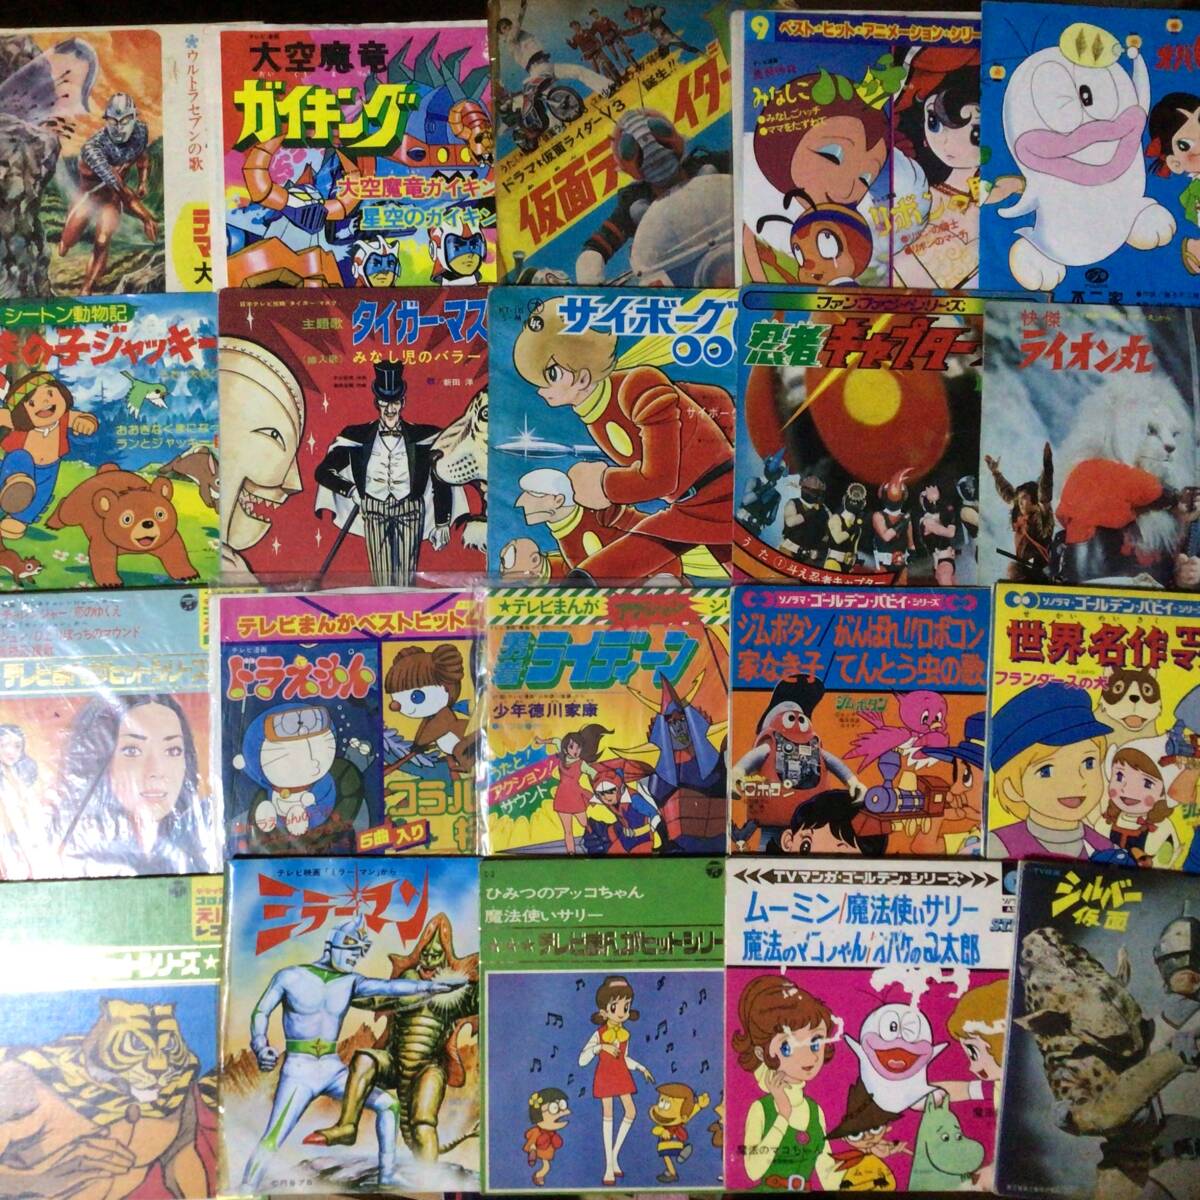  manga (манга) * аниме EP70 листов совместно выставляем kai6204